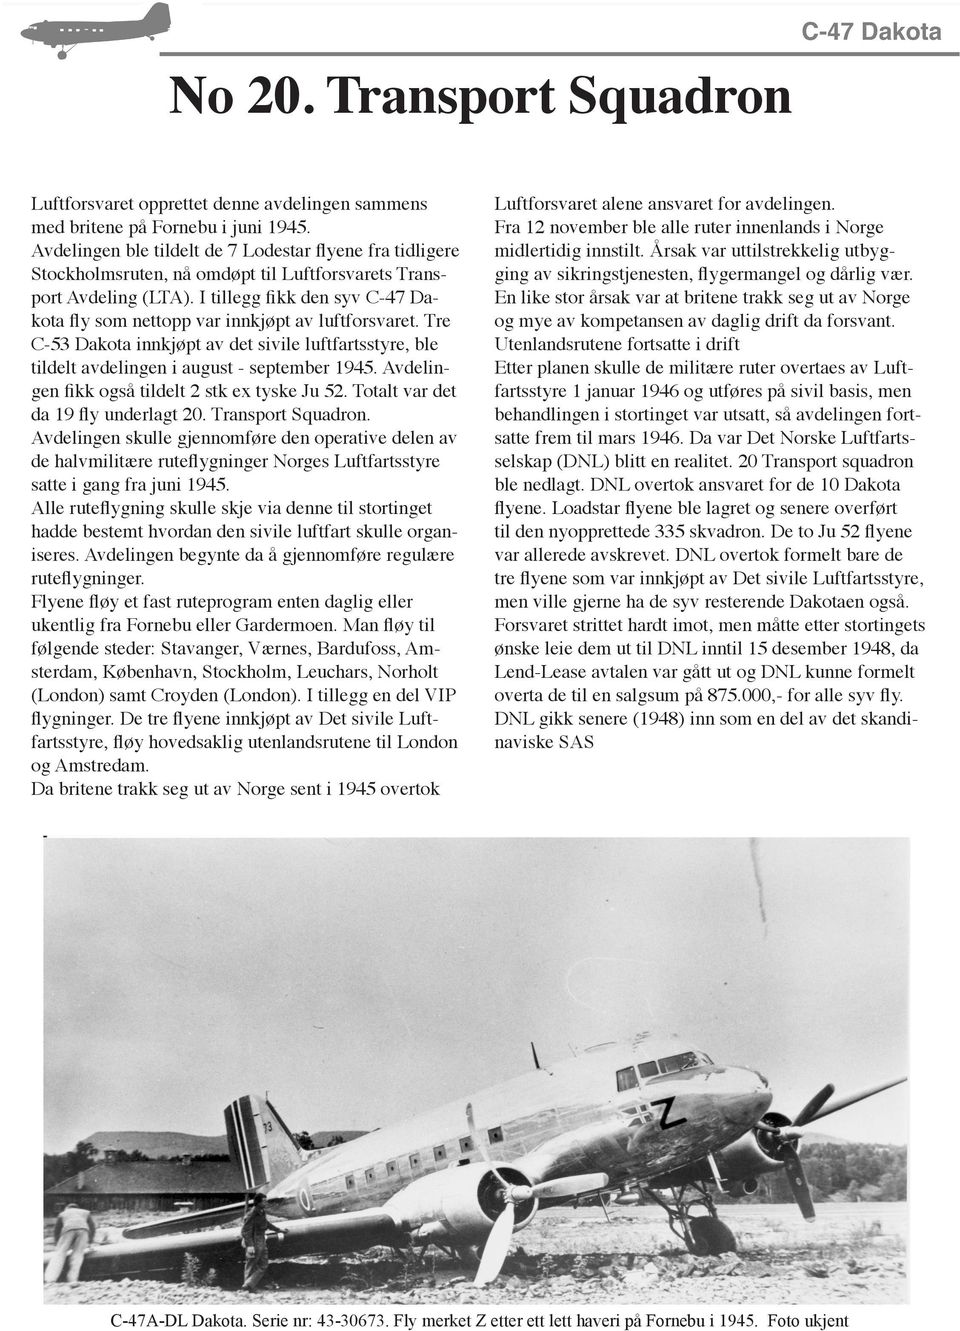 I tillegg fikk den syv C-47 Dakota fly som nettopp var innkjøpt av luftforsvaret. Tre C-53 Dakota innkjøpt av det sivile luftfartsstyre, ble tildelt avdelingen i august - september 1945.